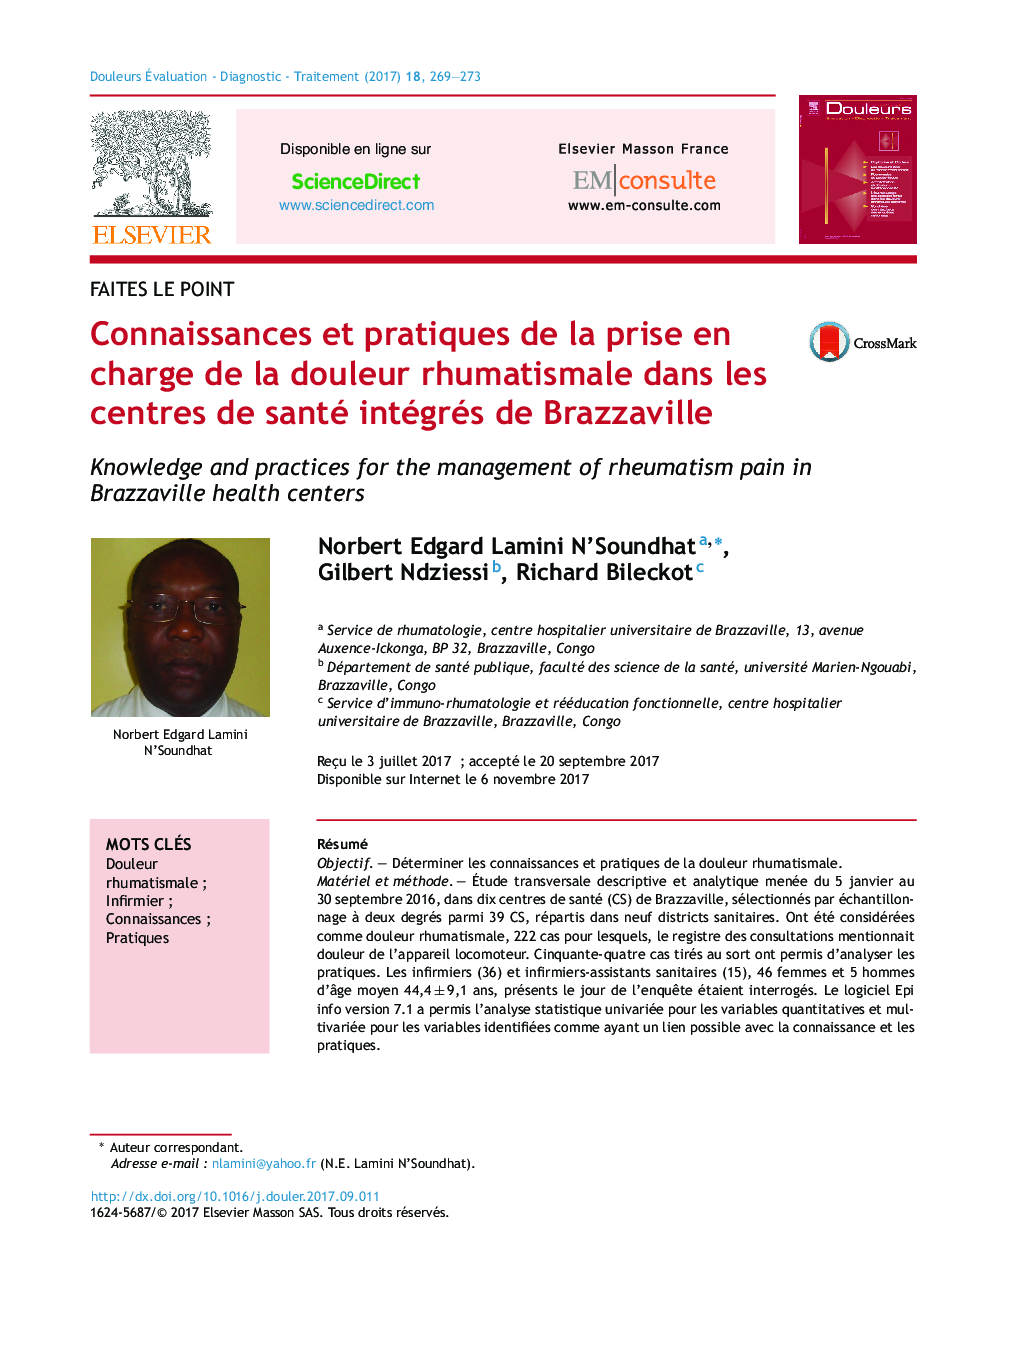 Connaissances et pratiques de la prise en charge de la douleur rhumatismale dans les centres de santé intégrés de Brazzaville